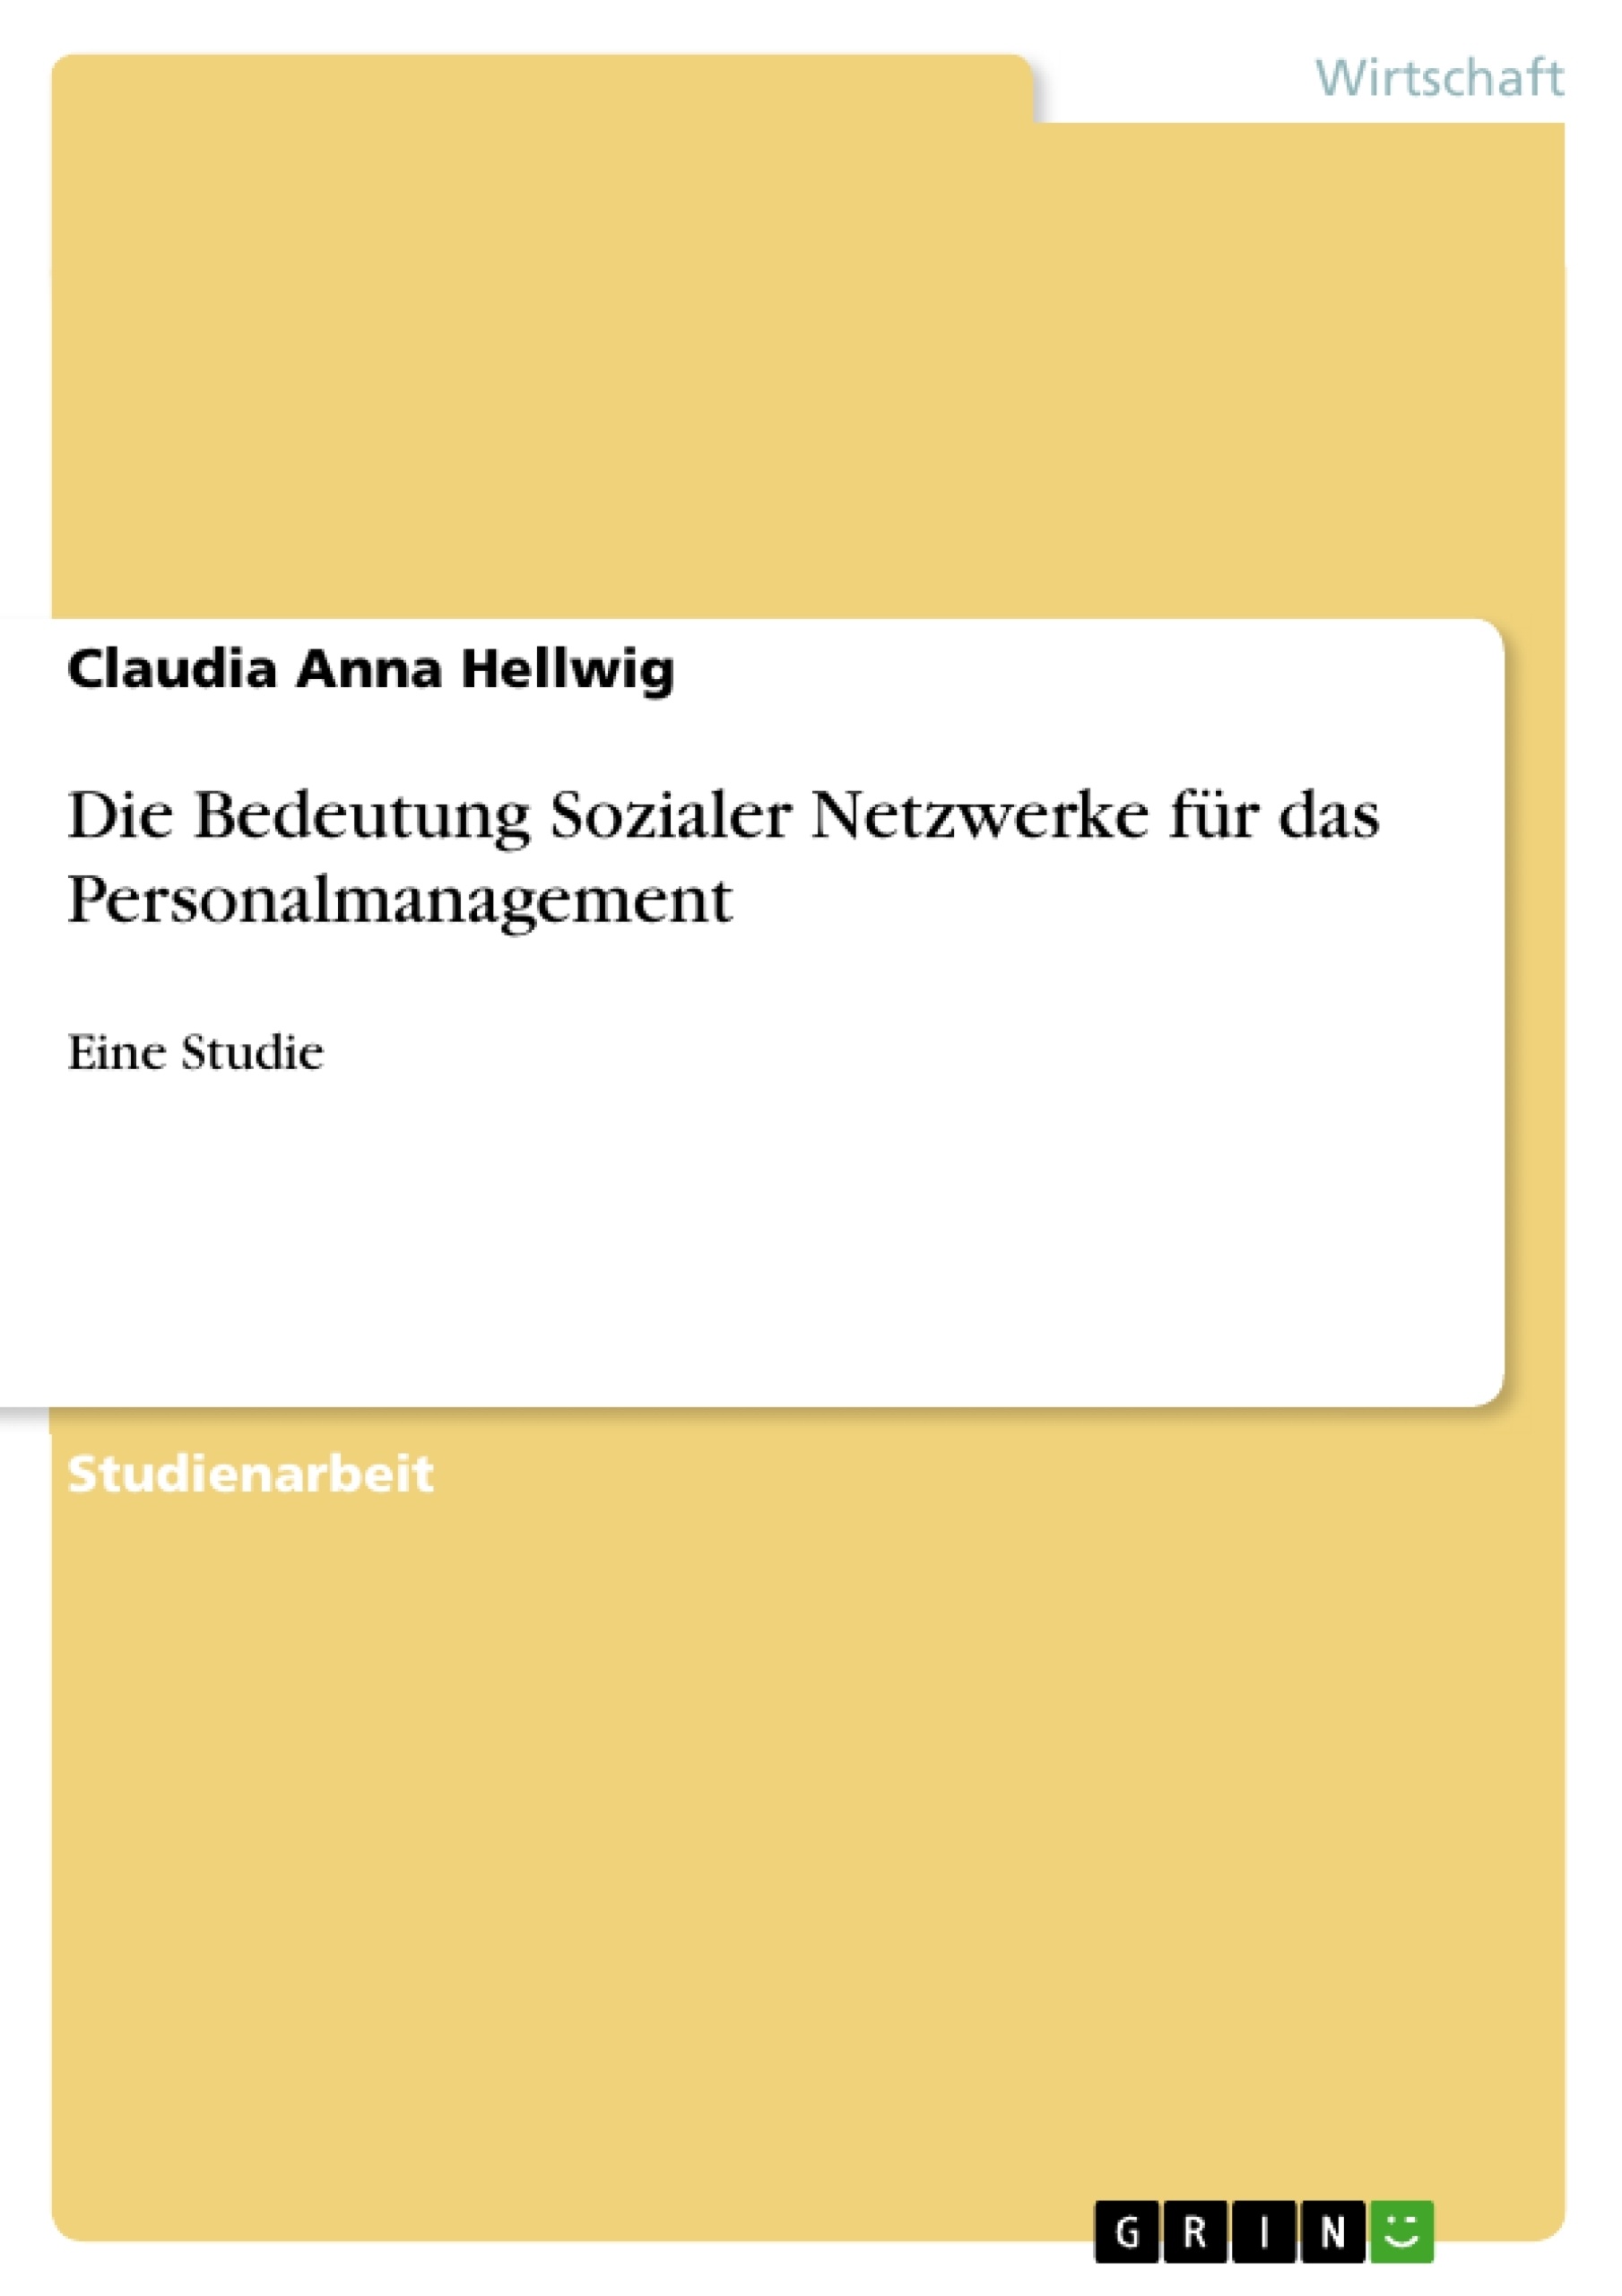 Title: Die Bedeutung Sozialer Netzwerke für das Personalmanagement